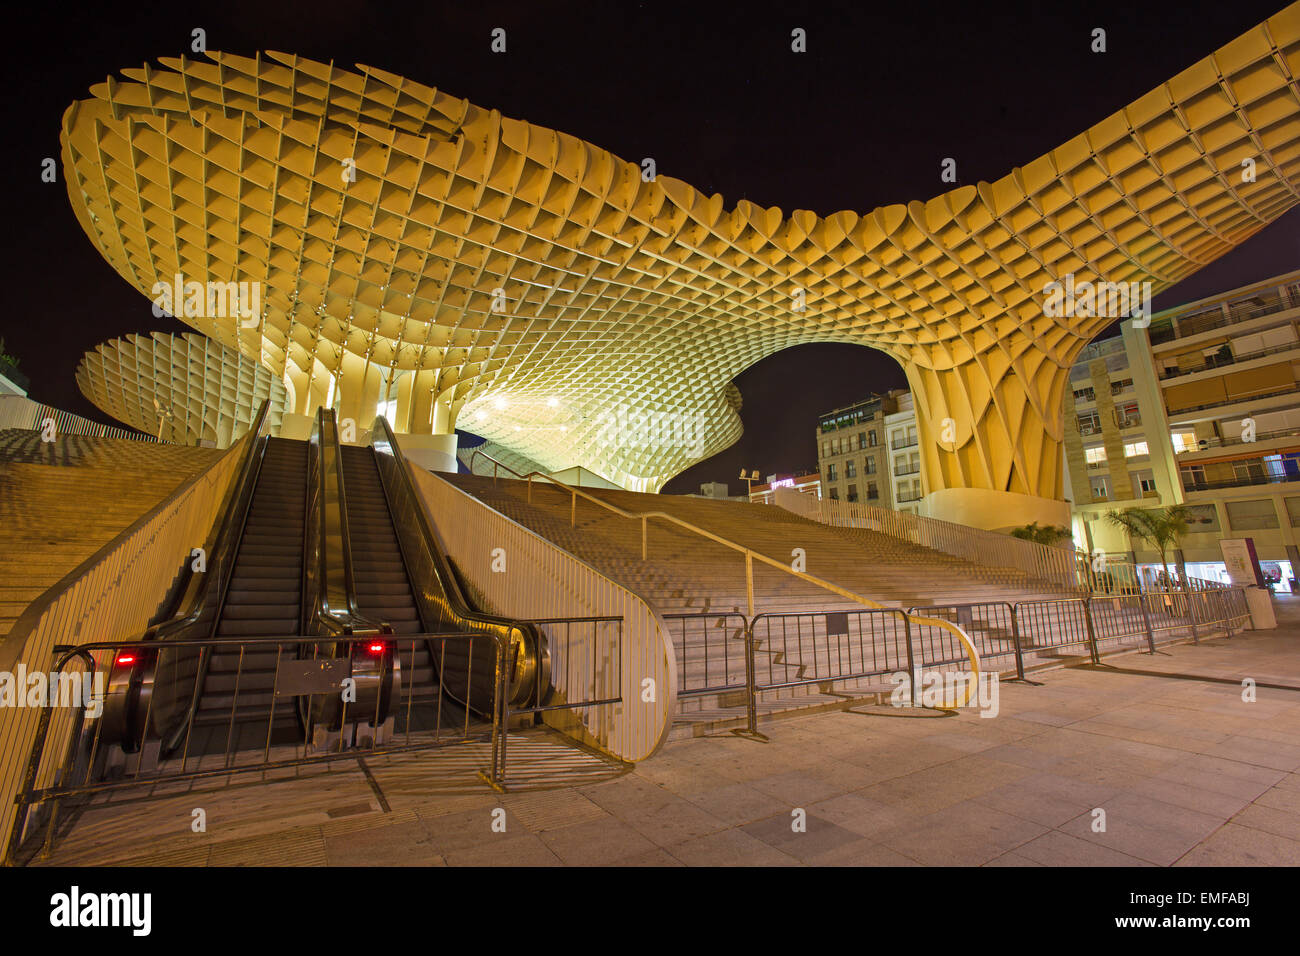 Séville, ESPAGNE - 28 octobre 2014 : Metropol Parasol structure en bois situé à la place d'Encarnacion Banque D'Images